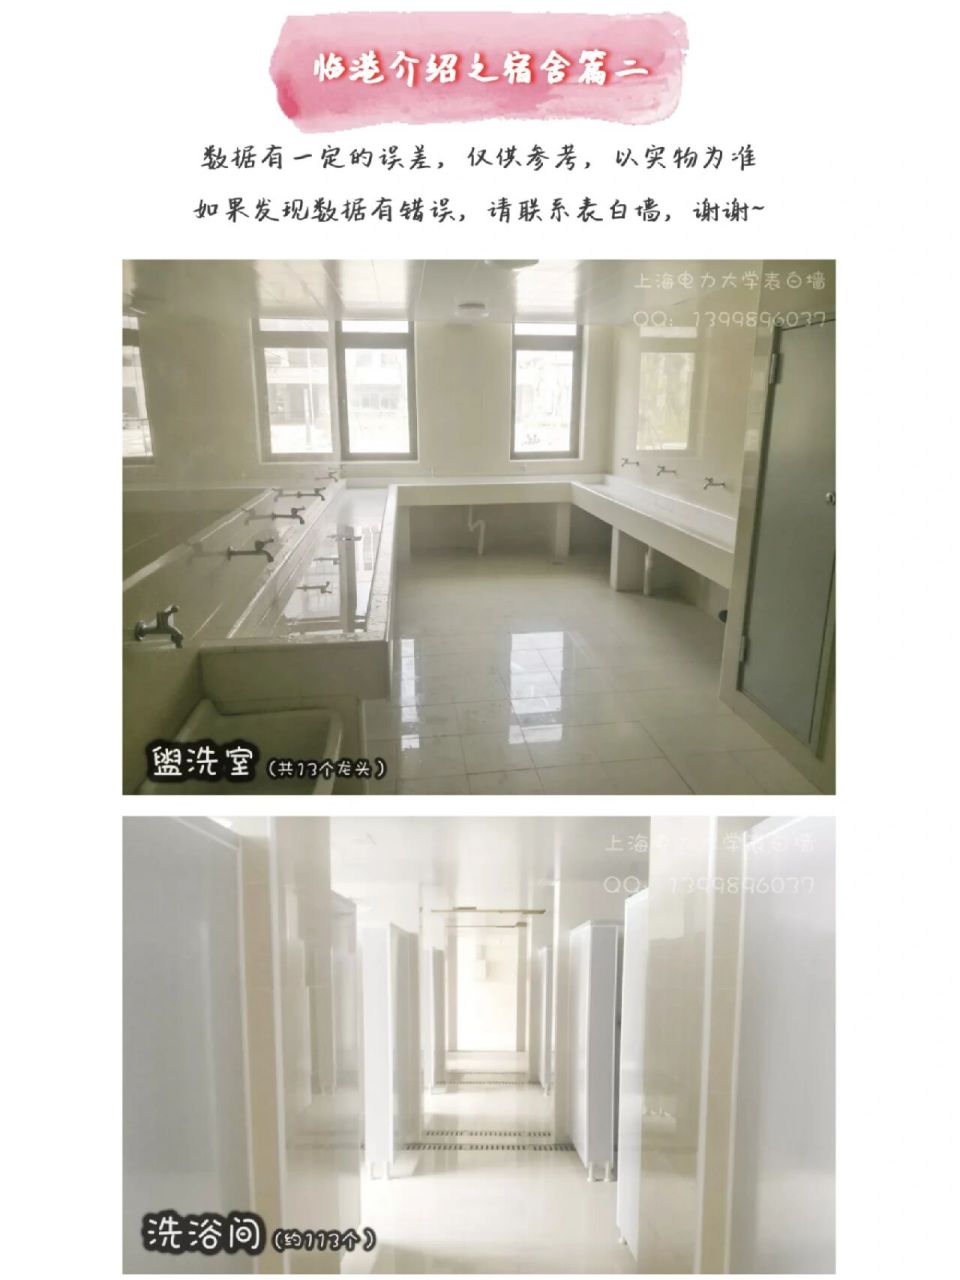 上海电力大学宿舍图片